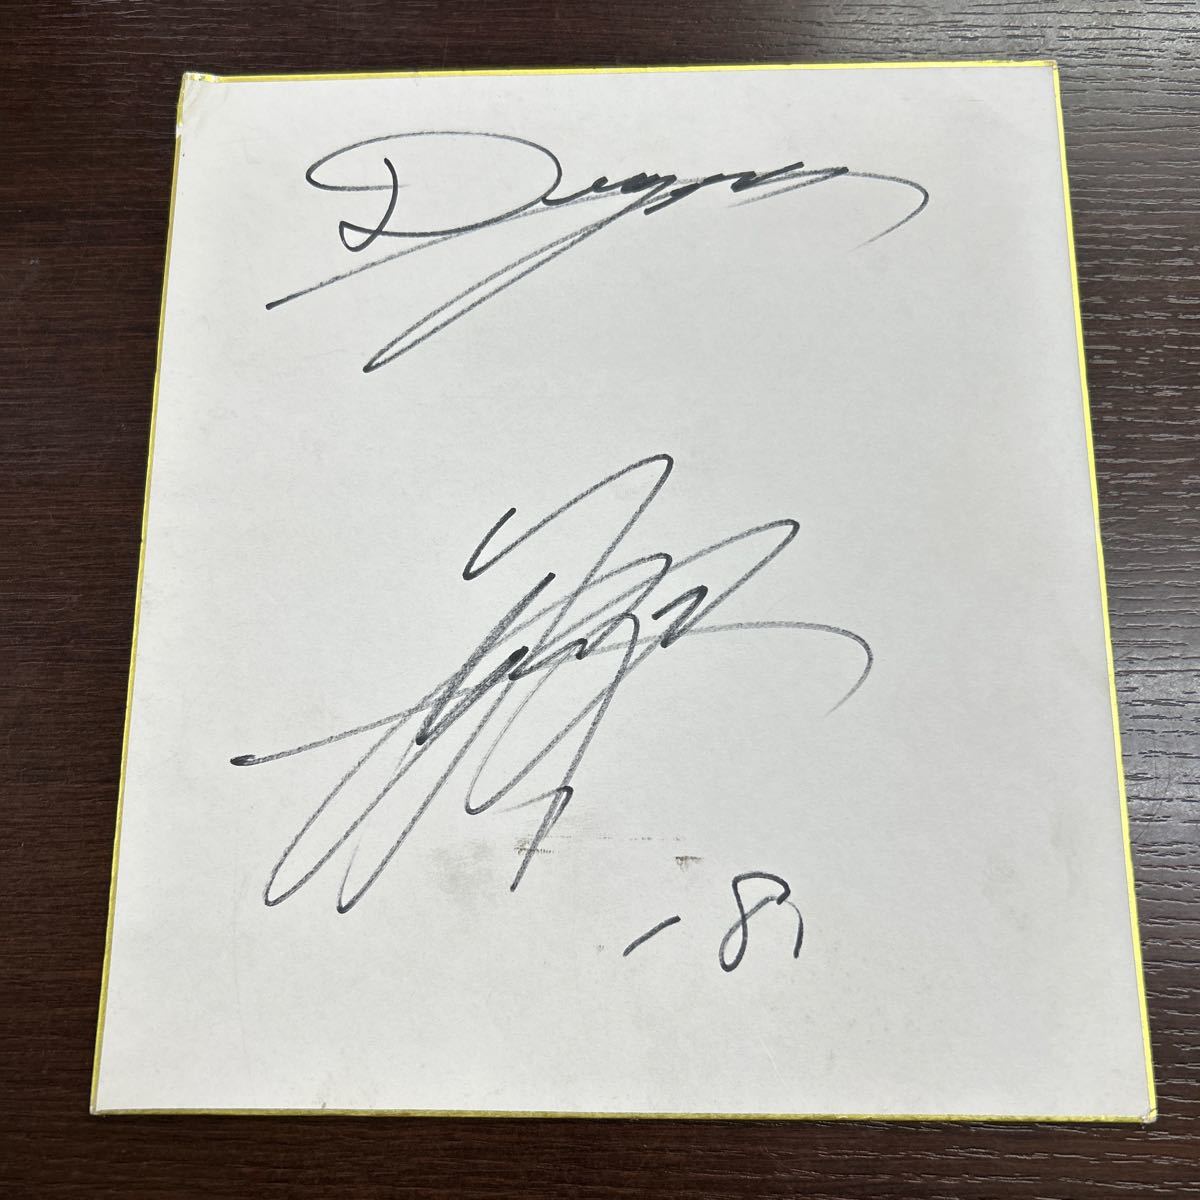 Chunichi Dragons Shota Suzuki # 18 Цветная бумага для рукописной подписи Цветная бумага для рукописной подписи, бейсбол, Сувенир, Сопутствующие товары, знак